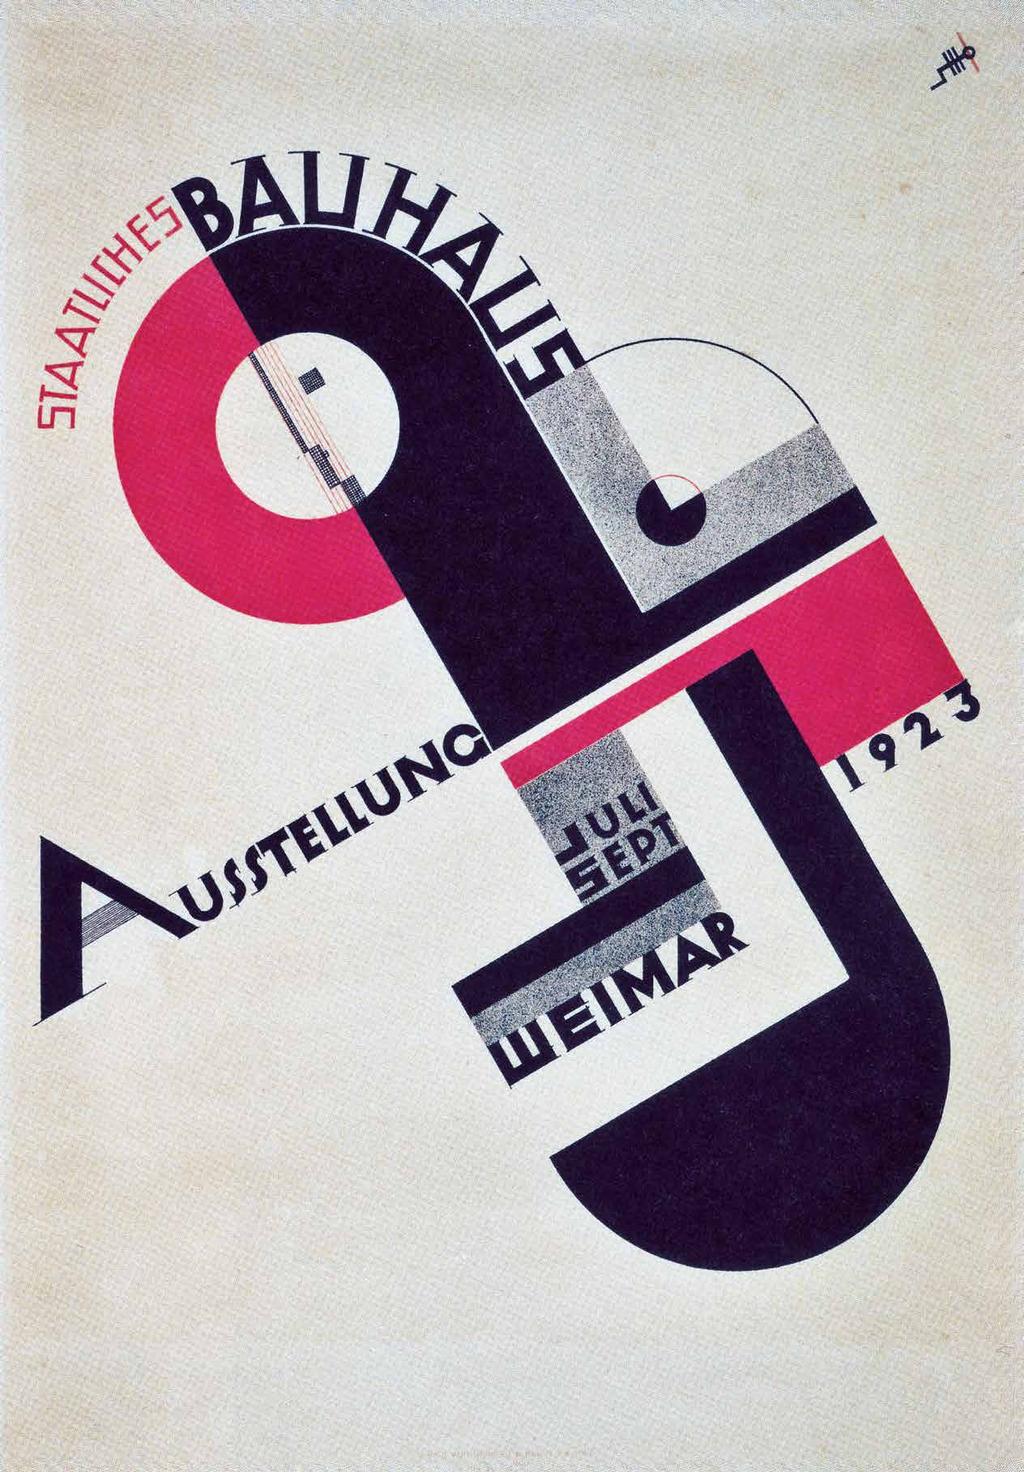 Joost Schmidt, αφίσα για την έκθεση του Μπάουχαους στη Βαϊμάρη, 1923.